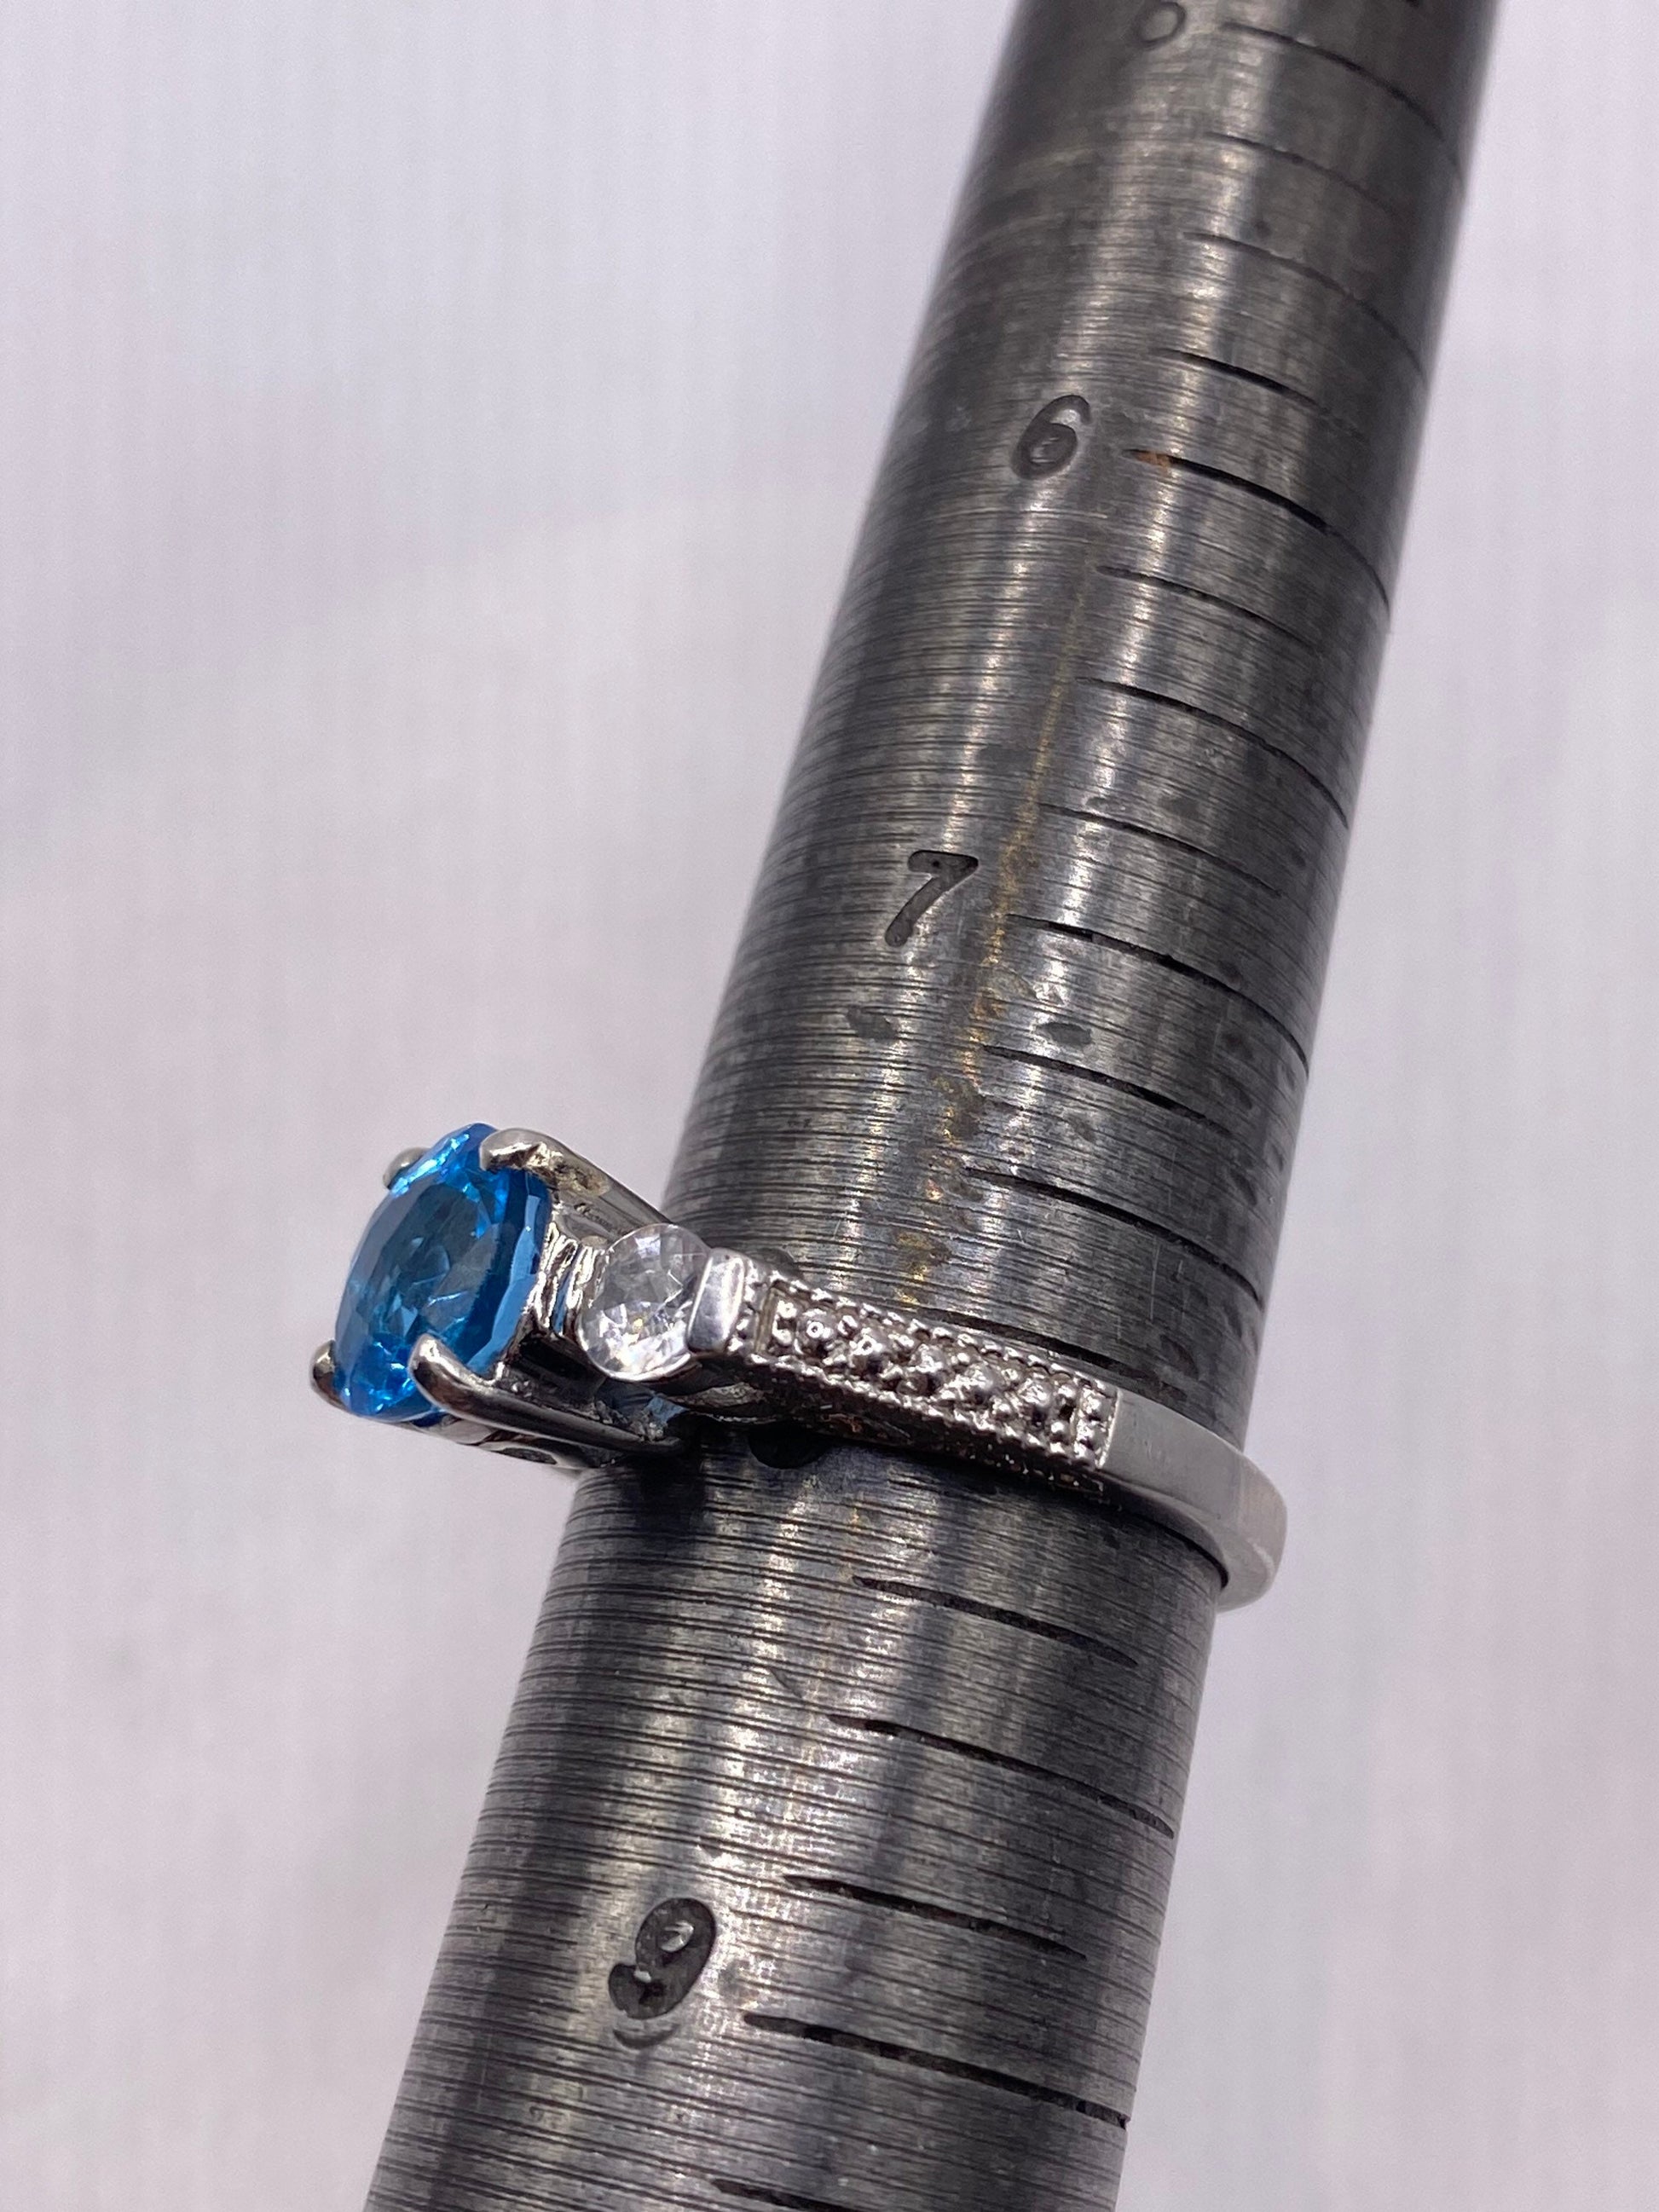 Vintage blue topaz 925 sterling silver promise Ring